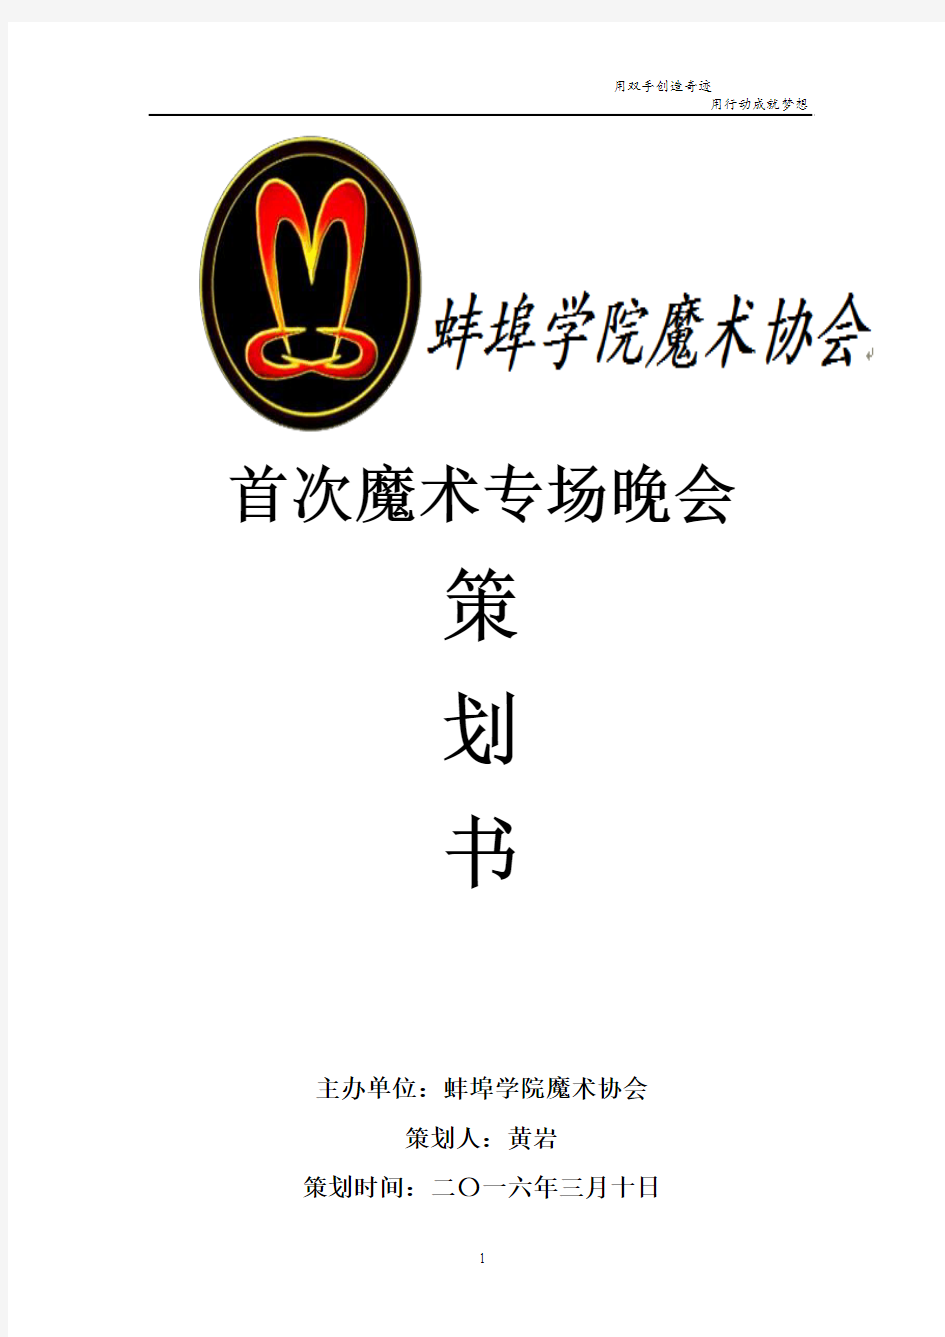 蚌埠学院魔术协会首次专场晚会策划书